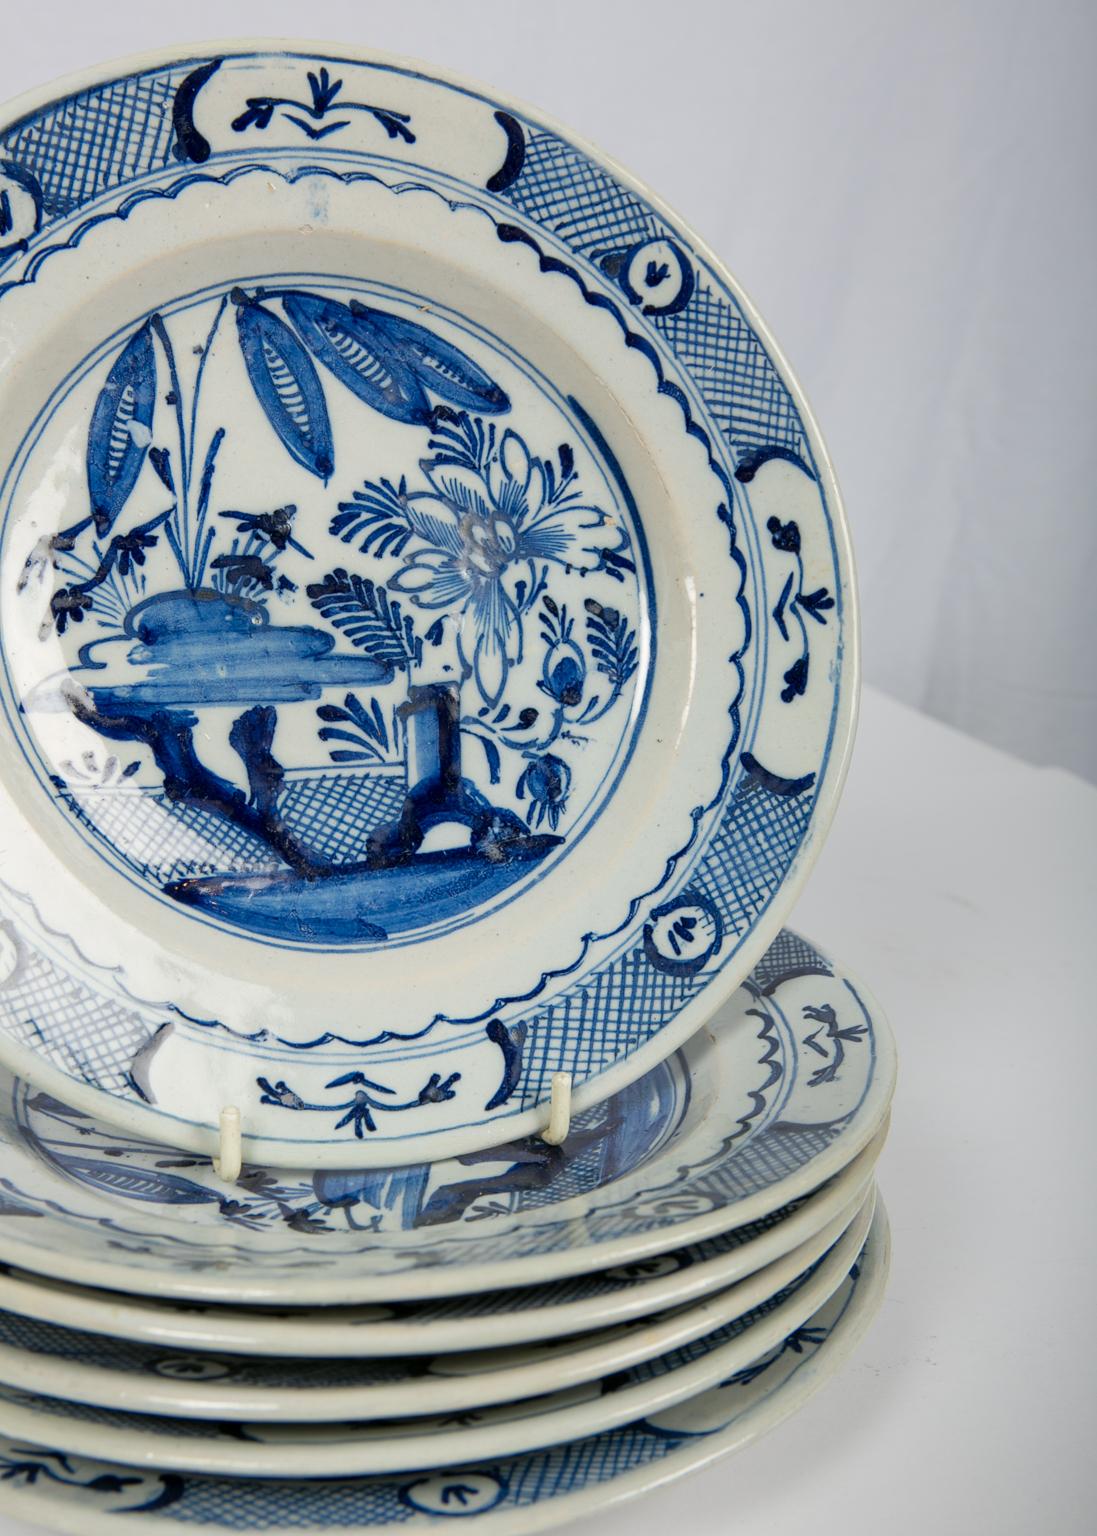 Six Delft Blue and White Dishes 18th Century circa 1785 (Niederländisch)